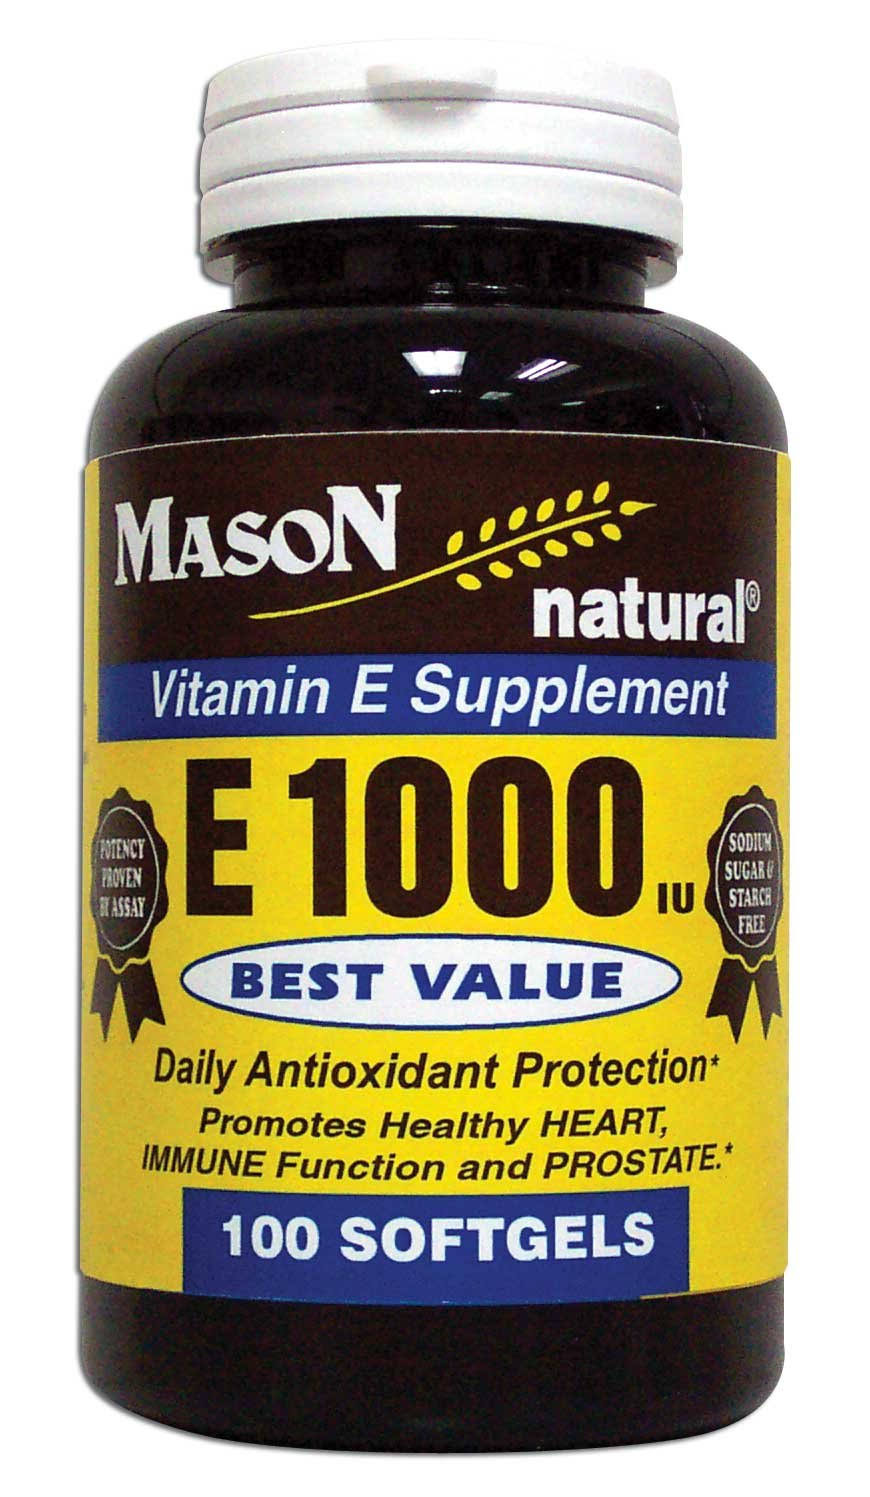 Mason Natural Vitamin E Supplement - 1000 Iu, 100 Softgels